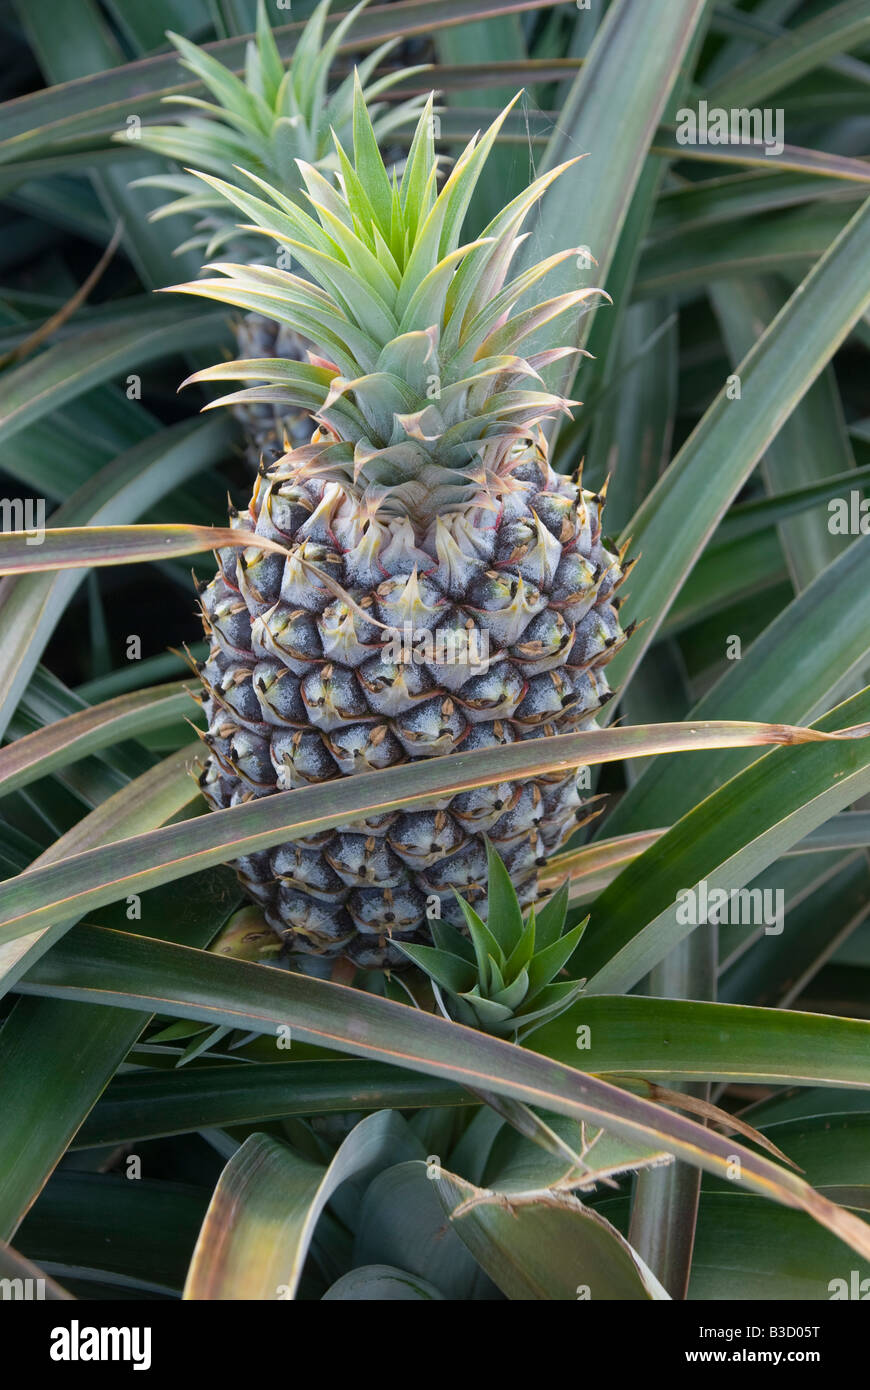 Pineapples growing in Queensland Australia Stock Photo